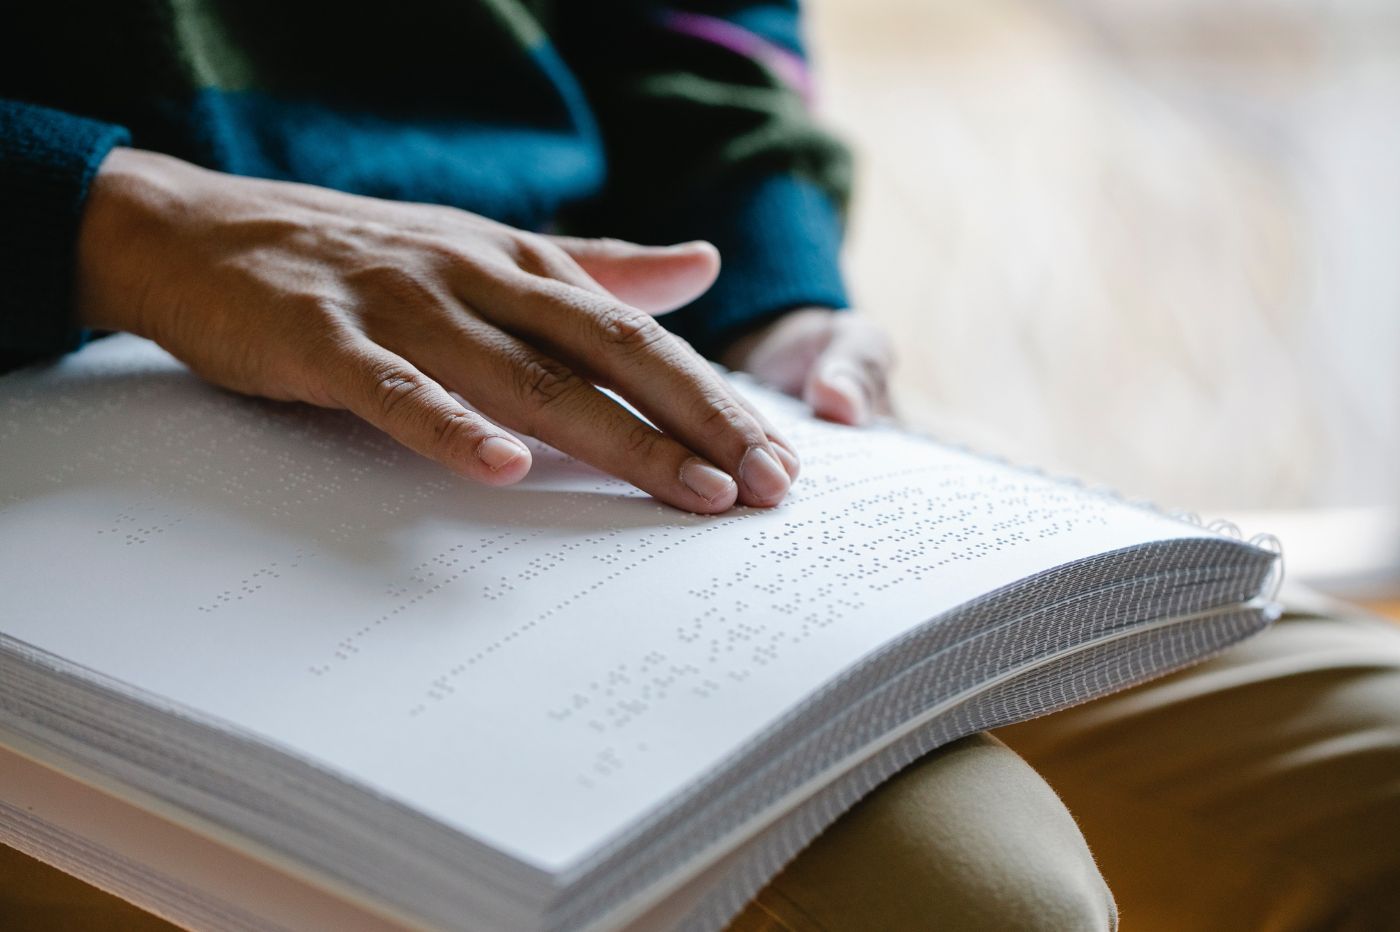 Une main glissant sur un livre en braille